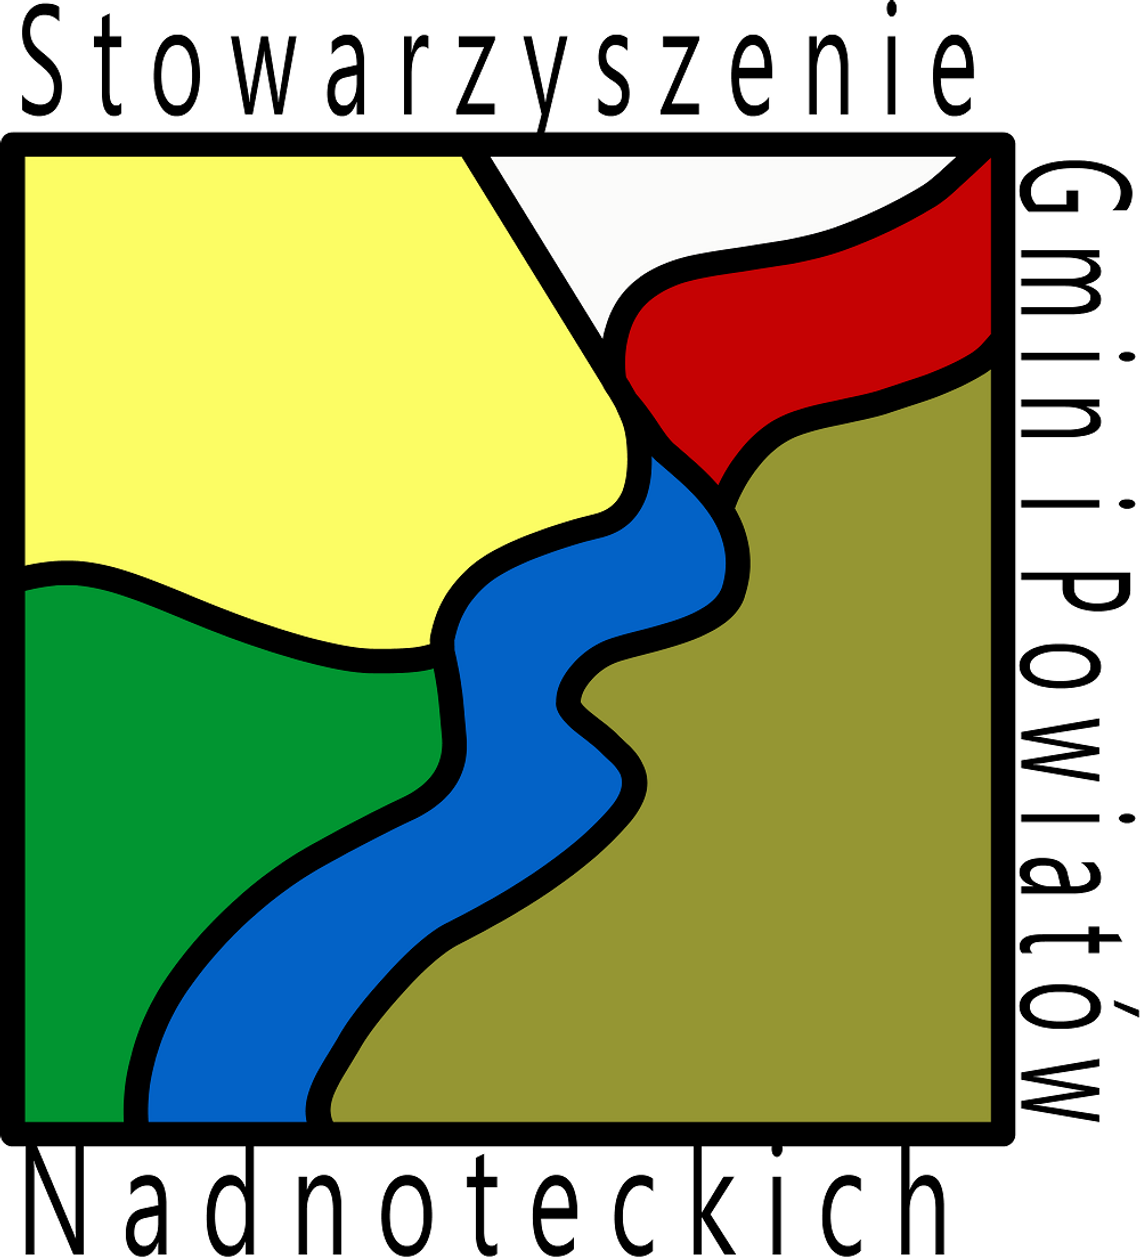 Stowarzyszenie Gmin i Powiatów Nadnoteckich dla mieszkańców Północnej Wielkopolski